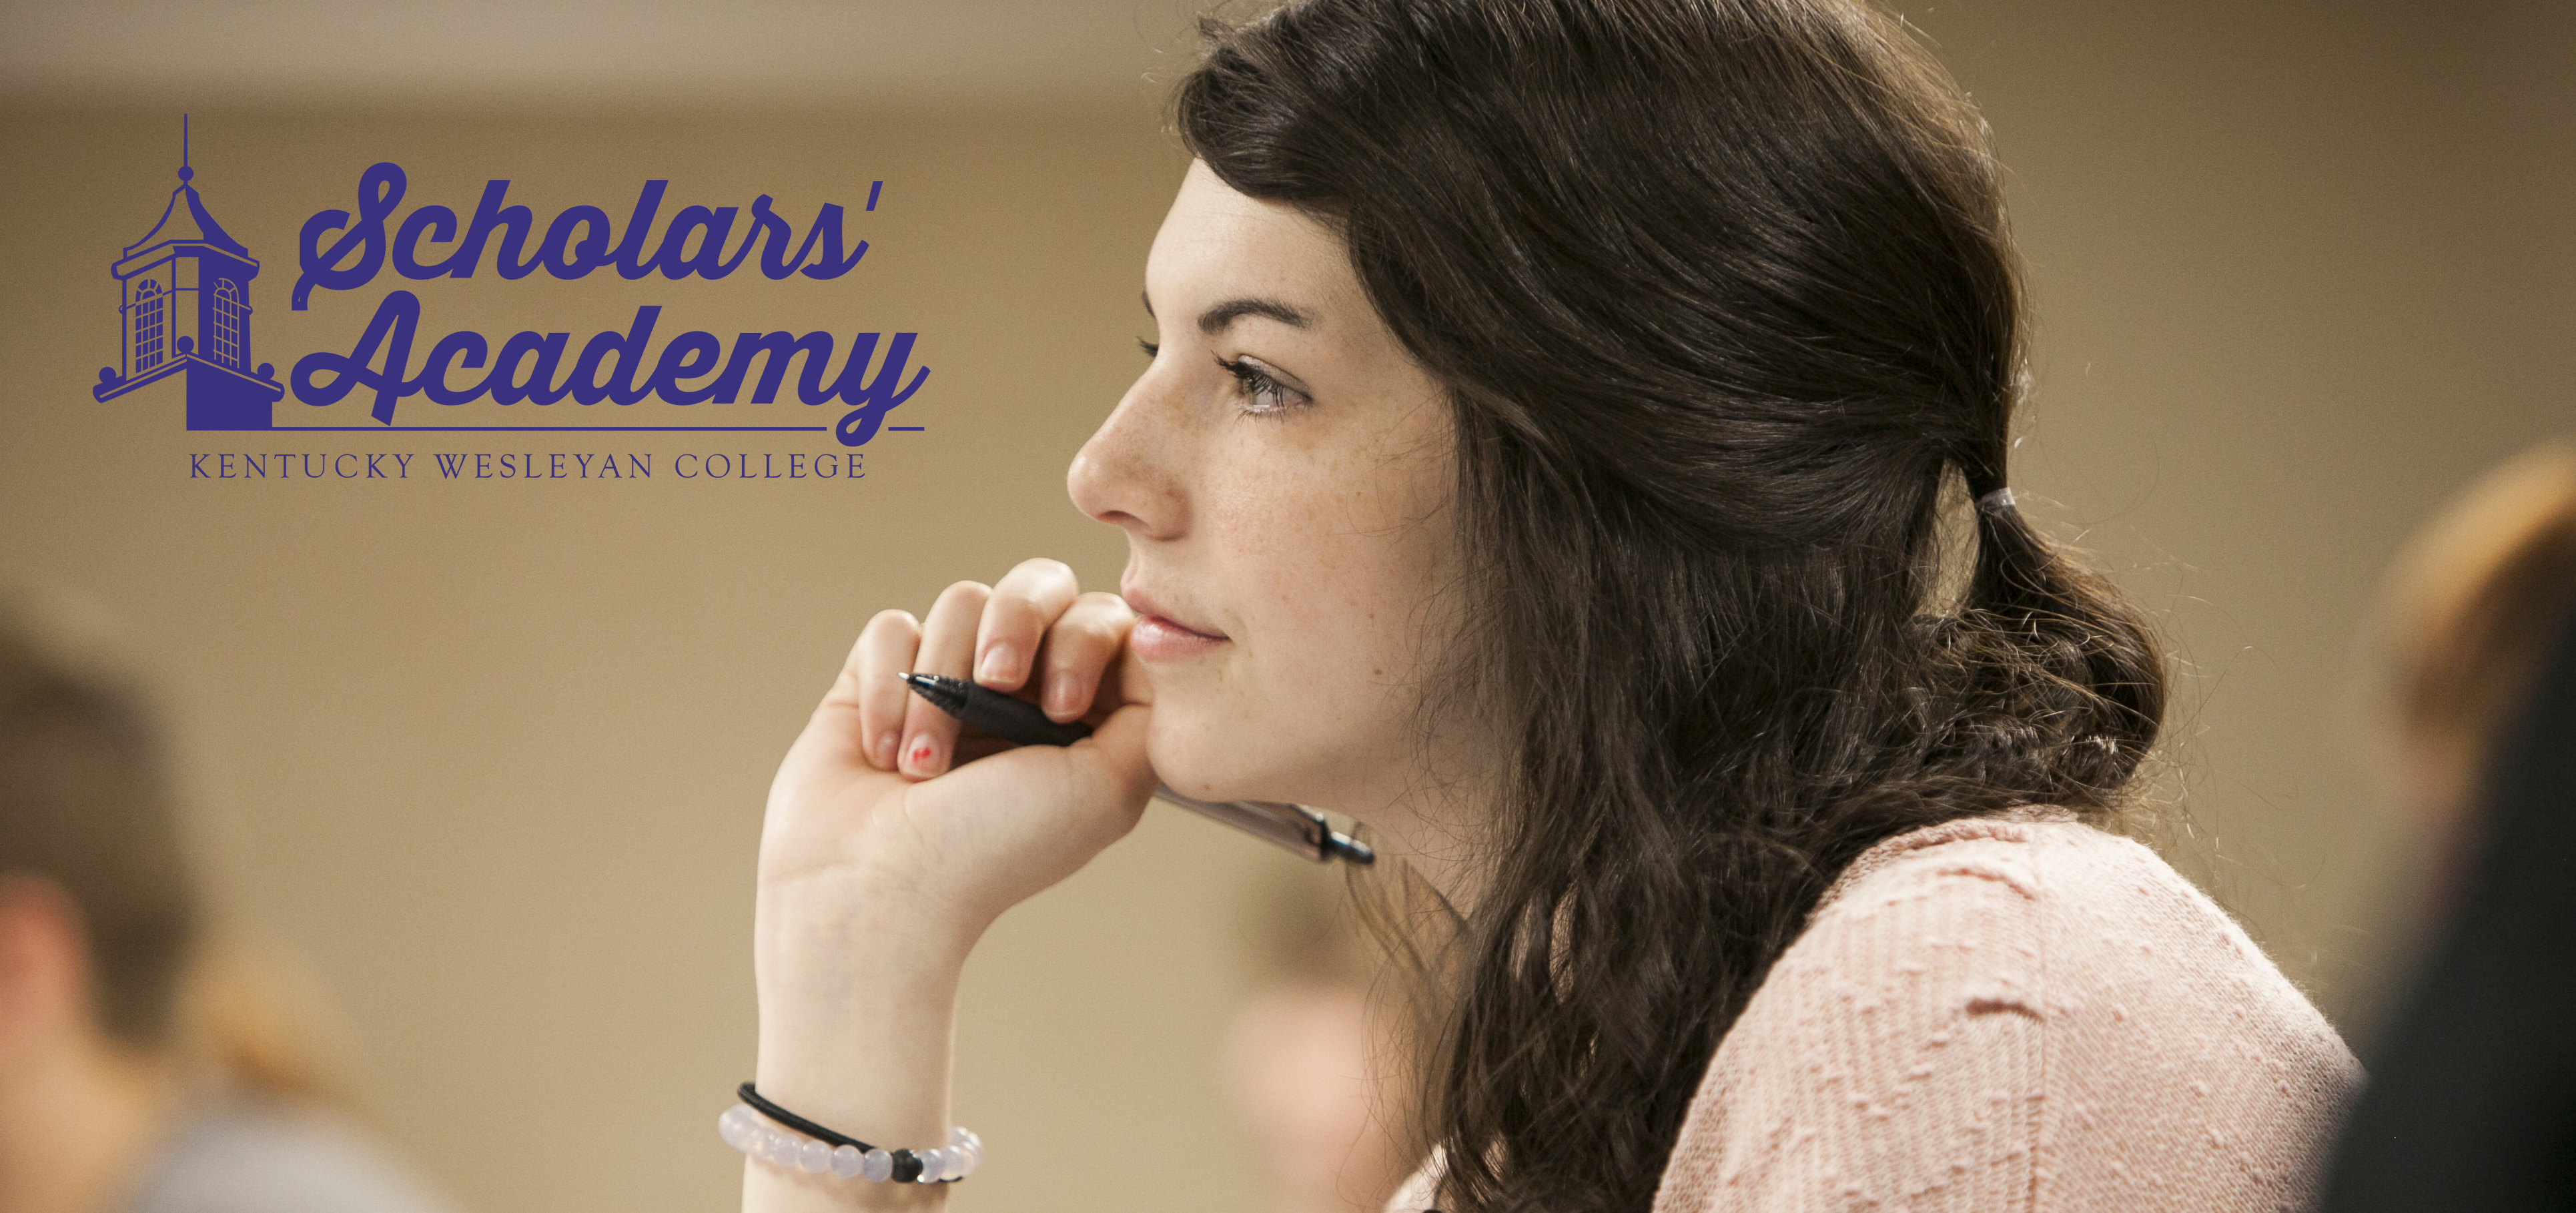 Kentucky Wesleyan Scholars’ Academy